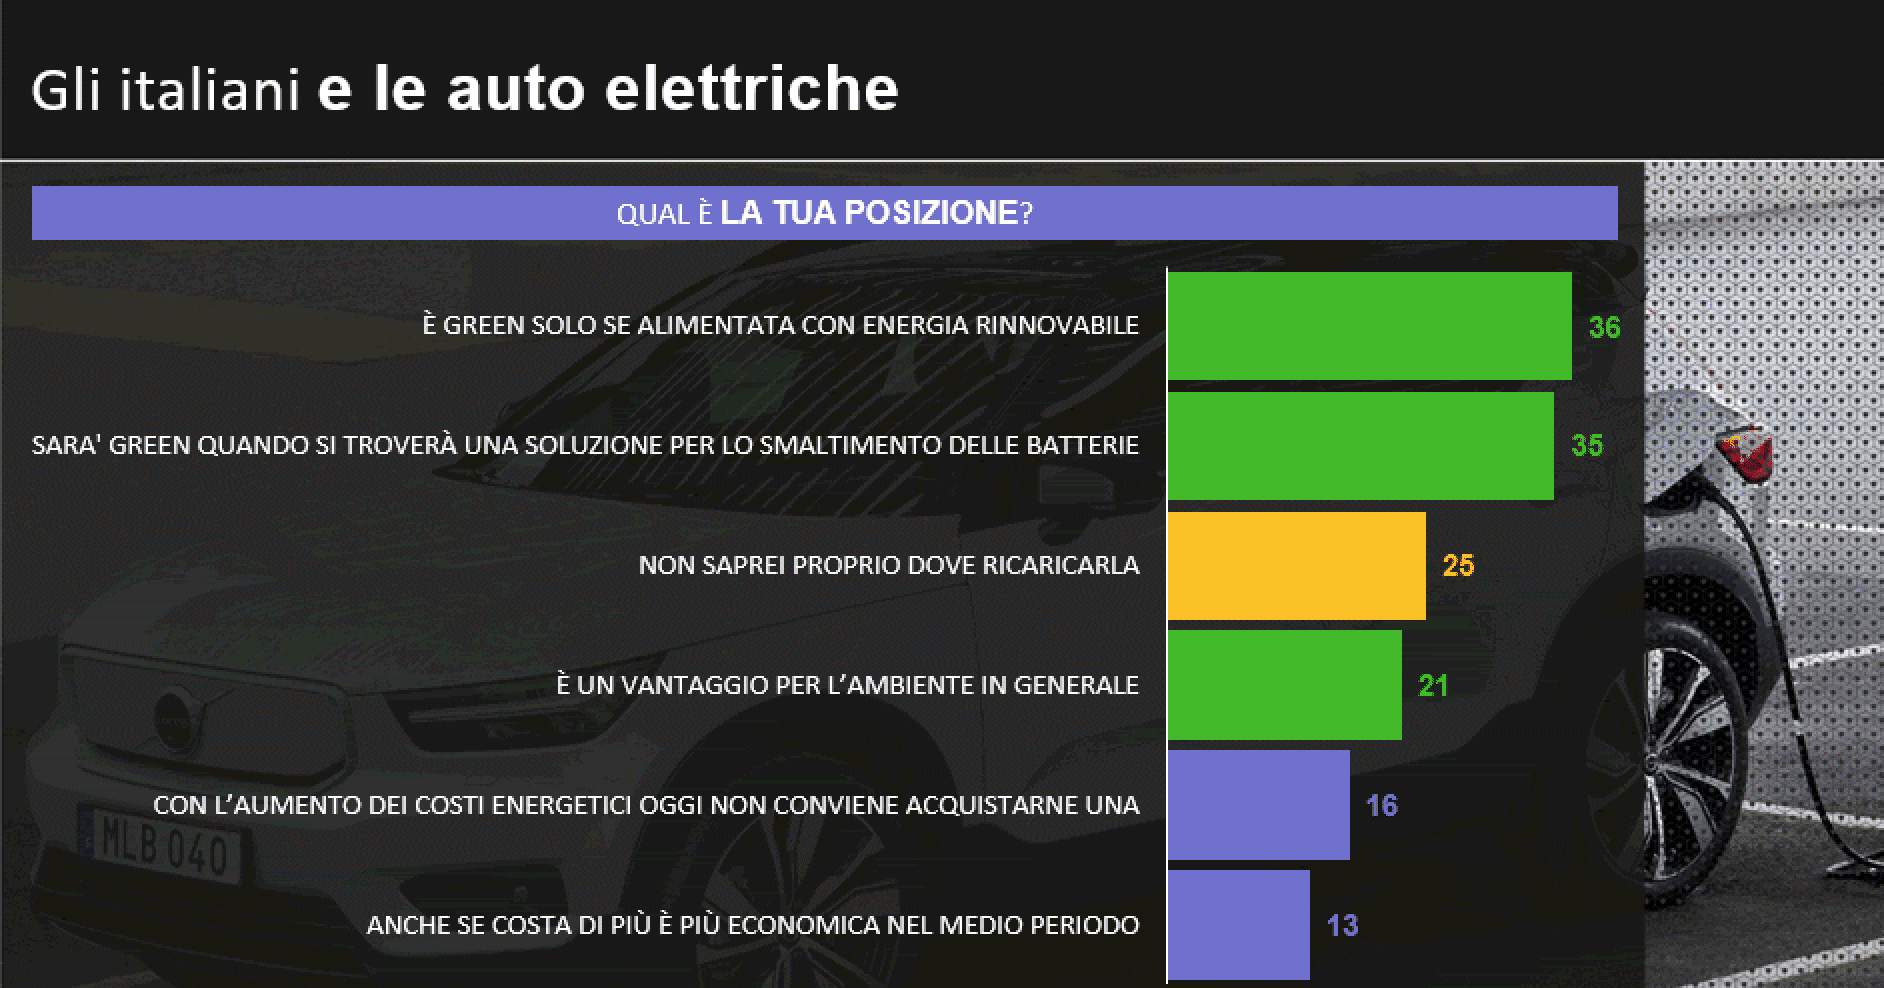 Per gli italiani l’auto elettrica non è poi così green